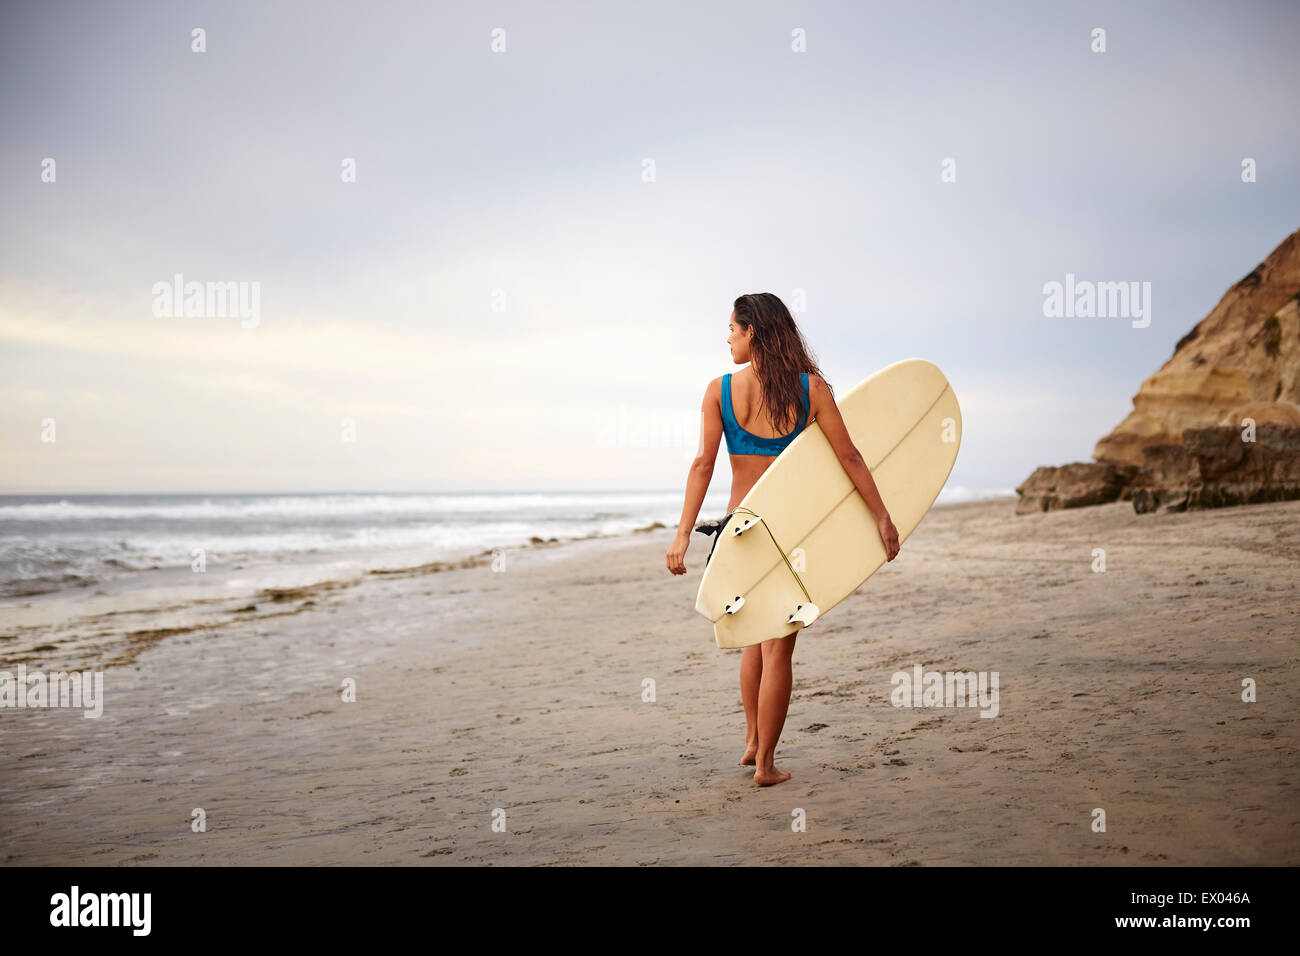 Rückansicht des jungen Frau mit Surfbrett, ein Spaziergang am Strand, San Diego, Kalifornien, USA Stockfoto